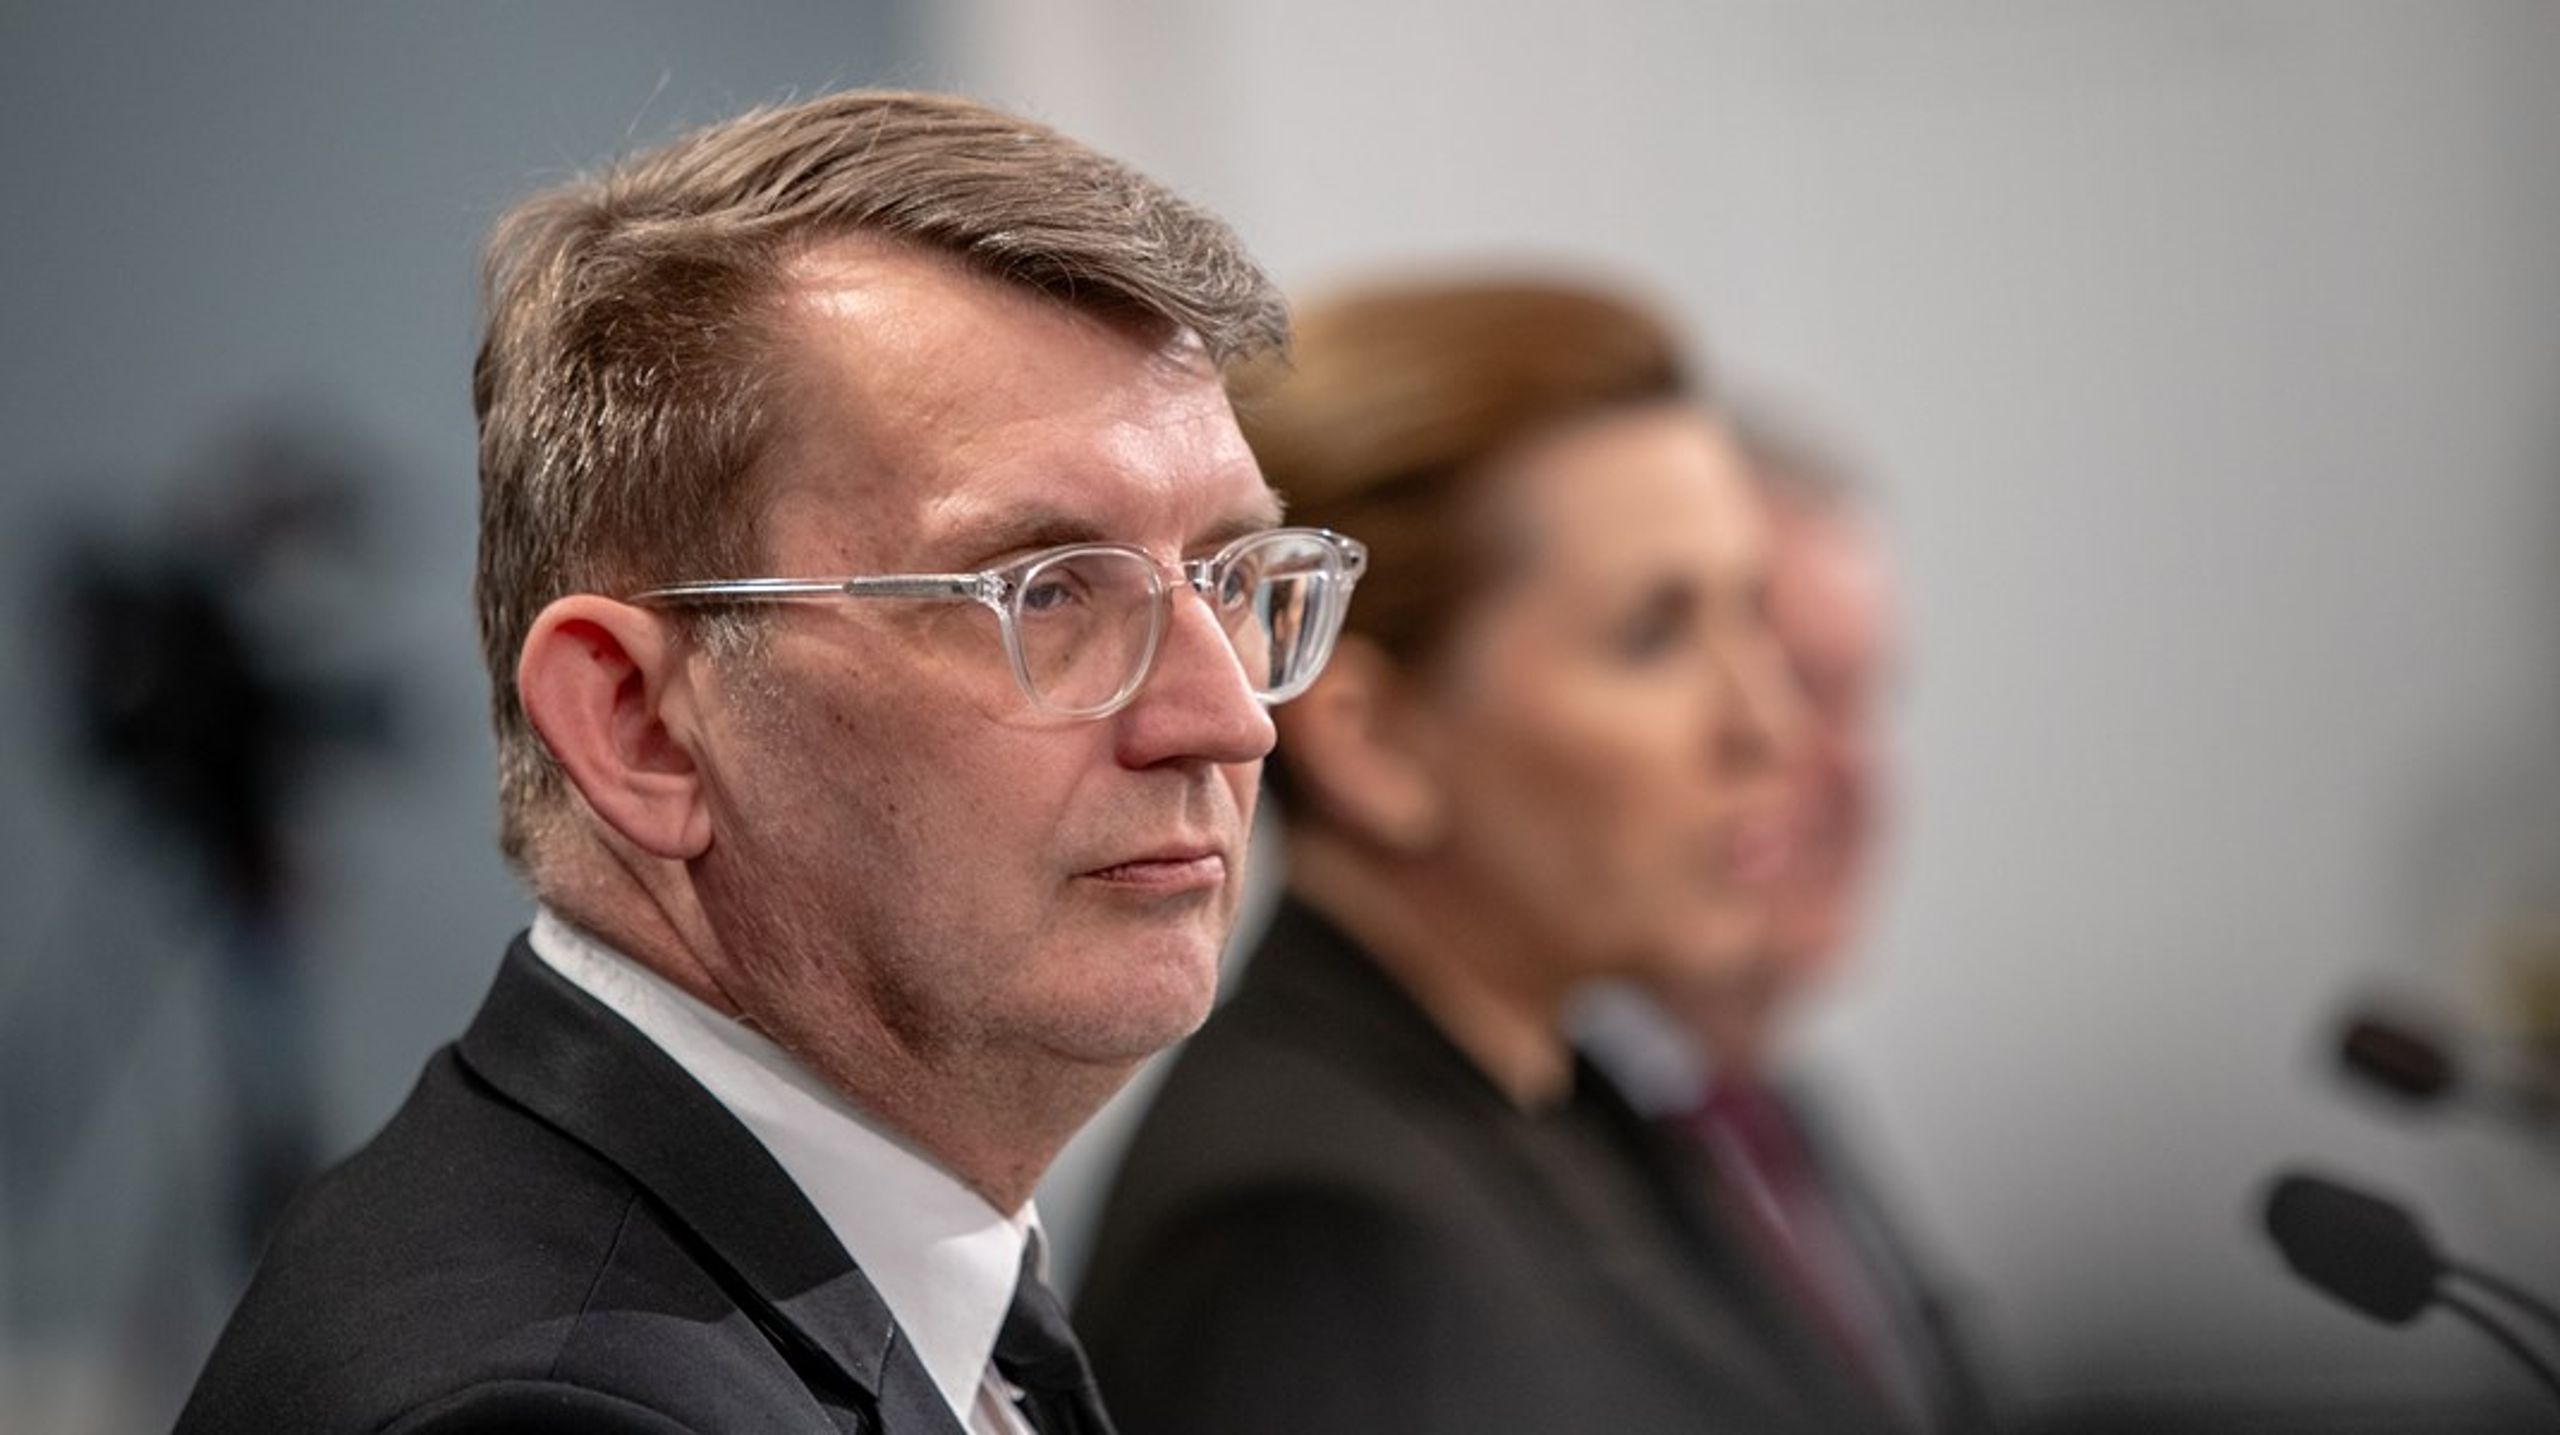 Forsvarsminister Troels Lund Poulsen (V) har lagt en ambitiøs plan for de kommende ugers forhandlinger.